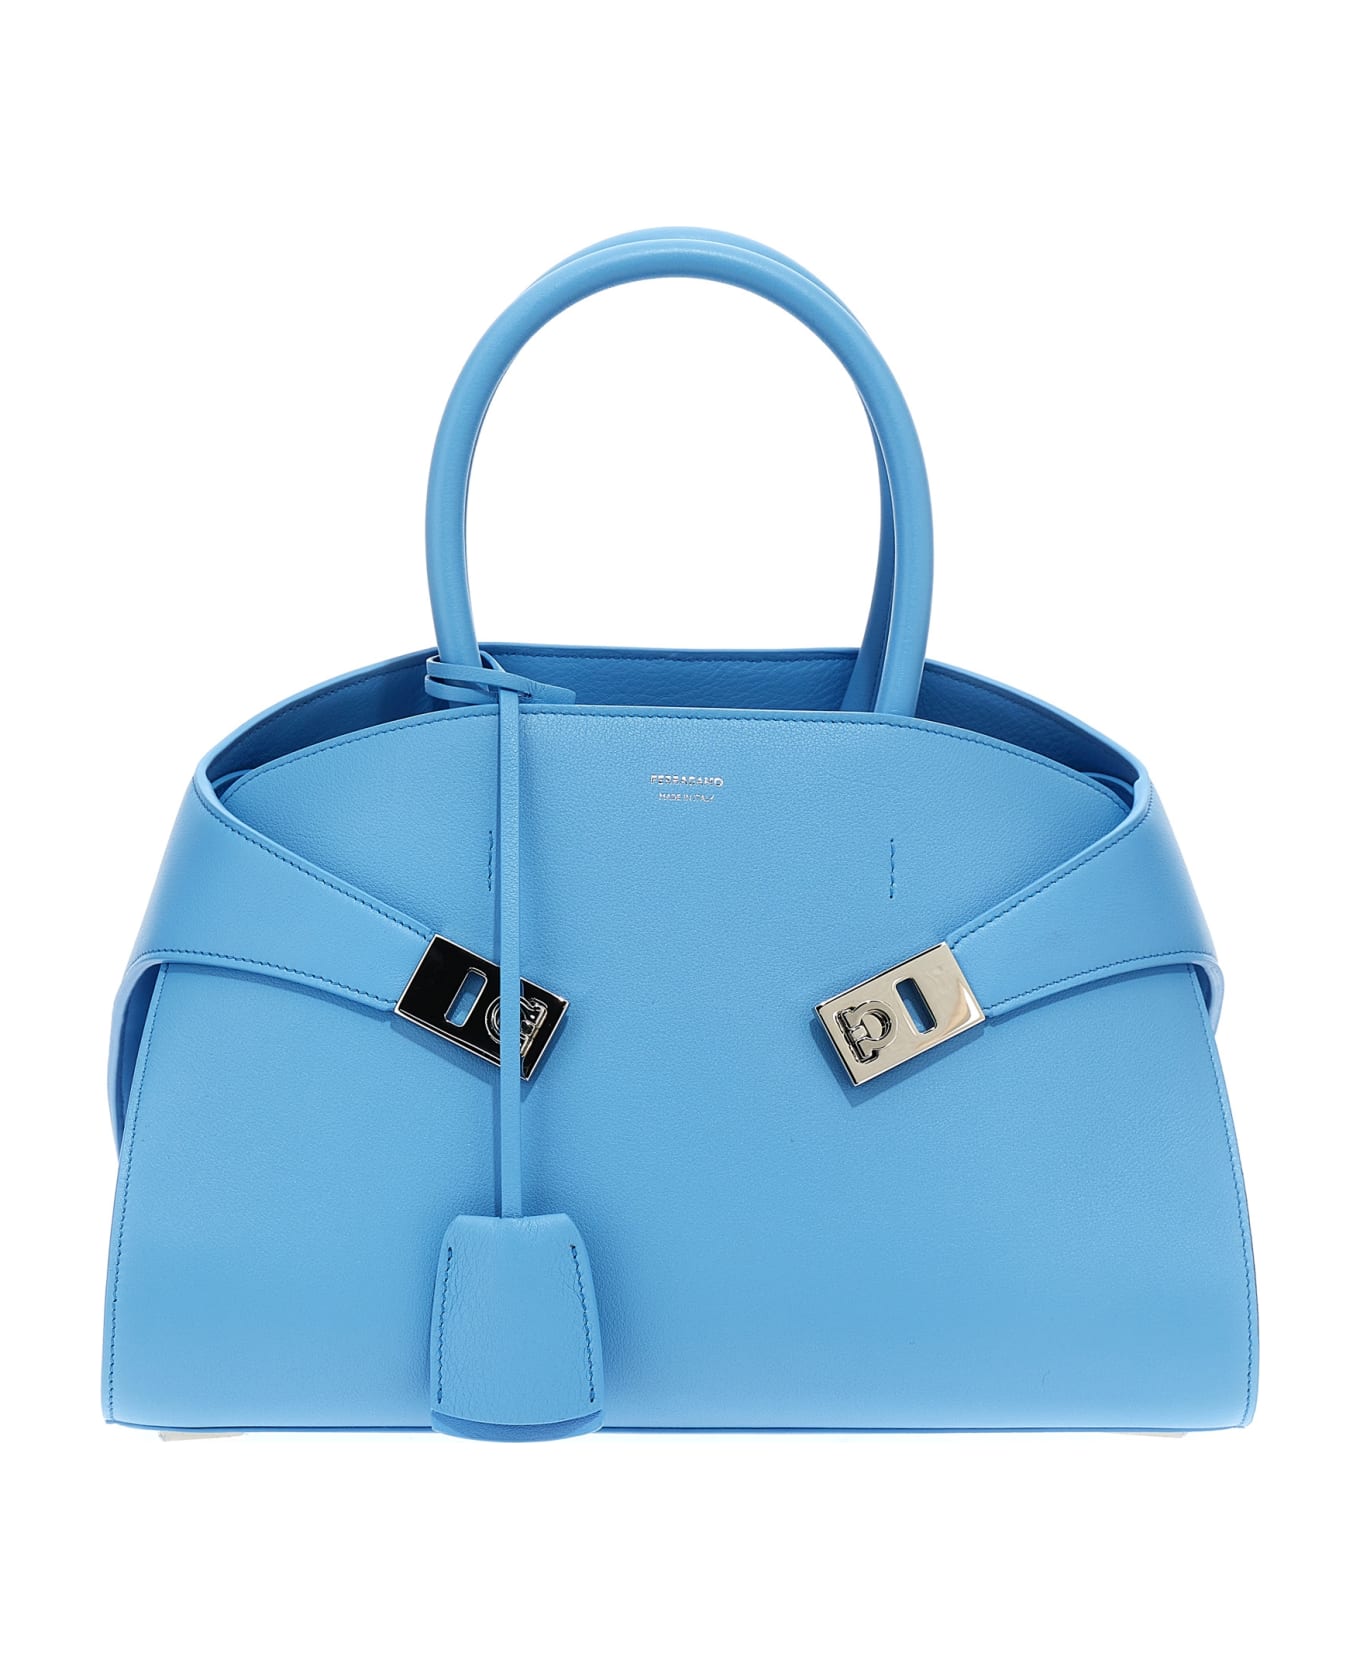 Ferragamo 'hug S' Handbag - Light Blue